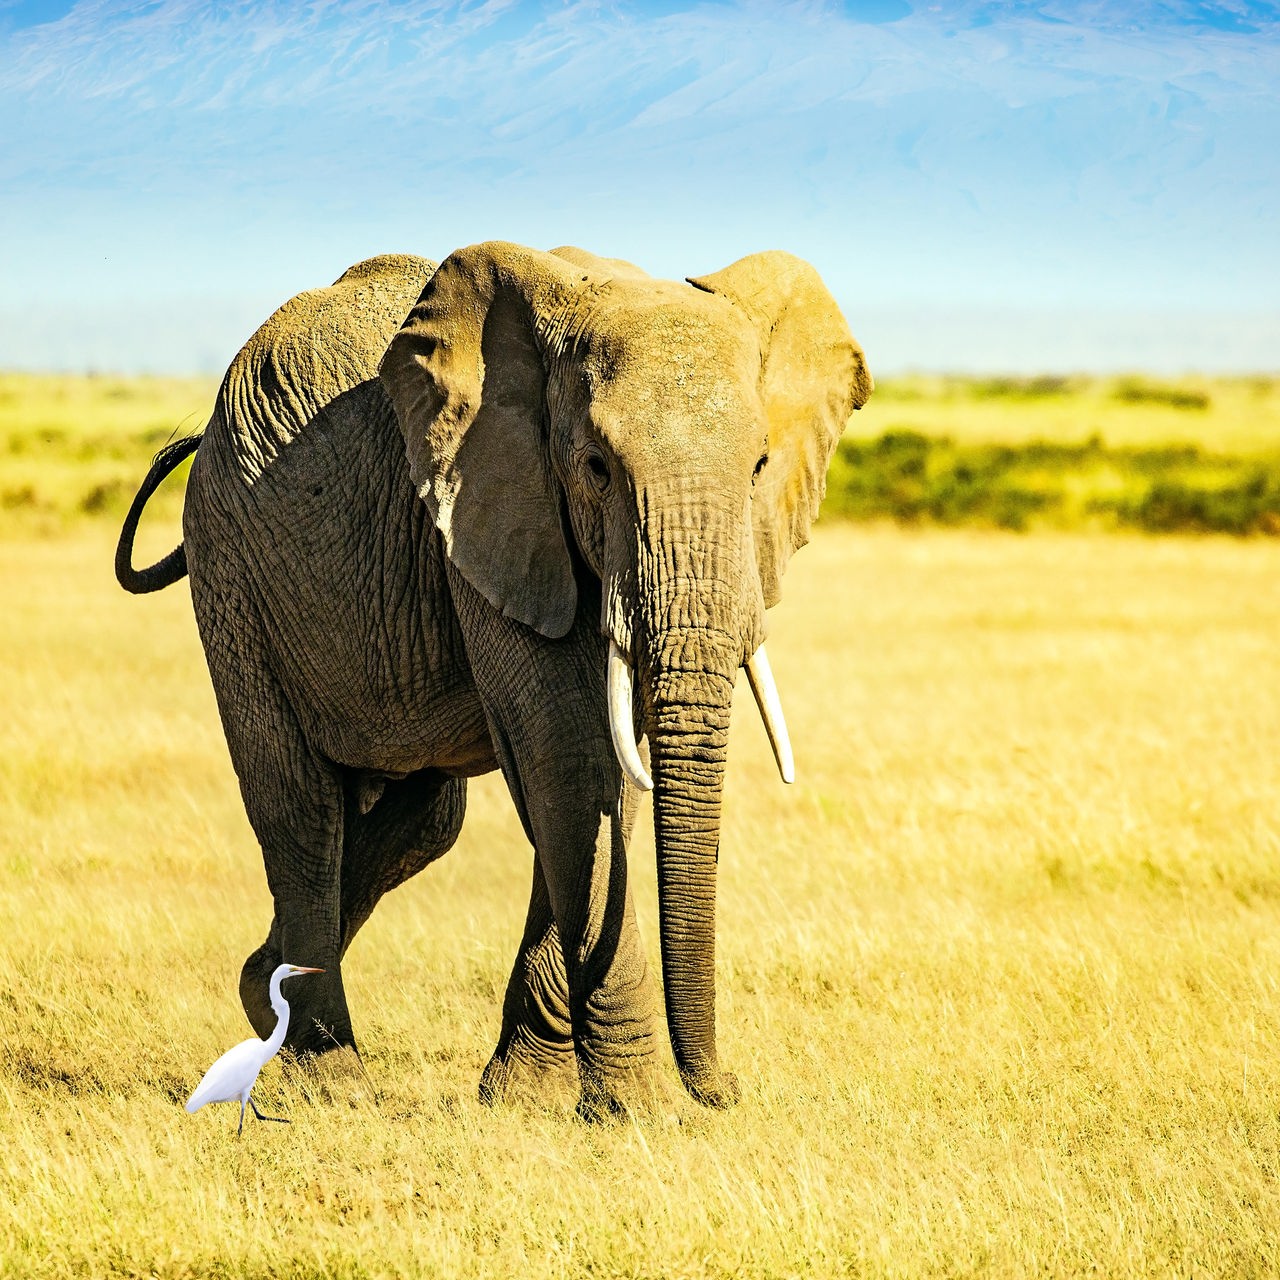 Ein Elefant steht in einer hellbraunen Steppenlandschaft vor einem Berg im Hintergrund und schaut in Richtung der Kamera.